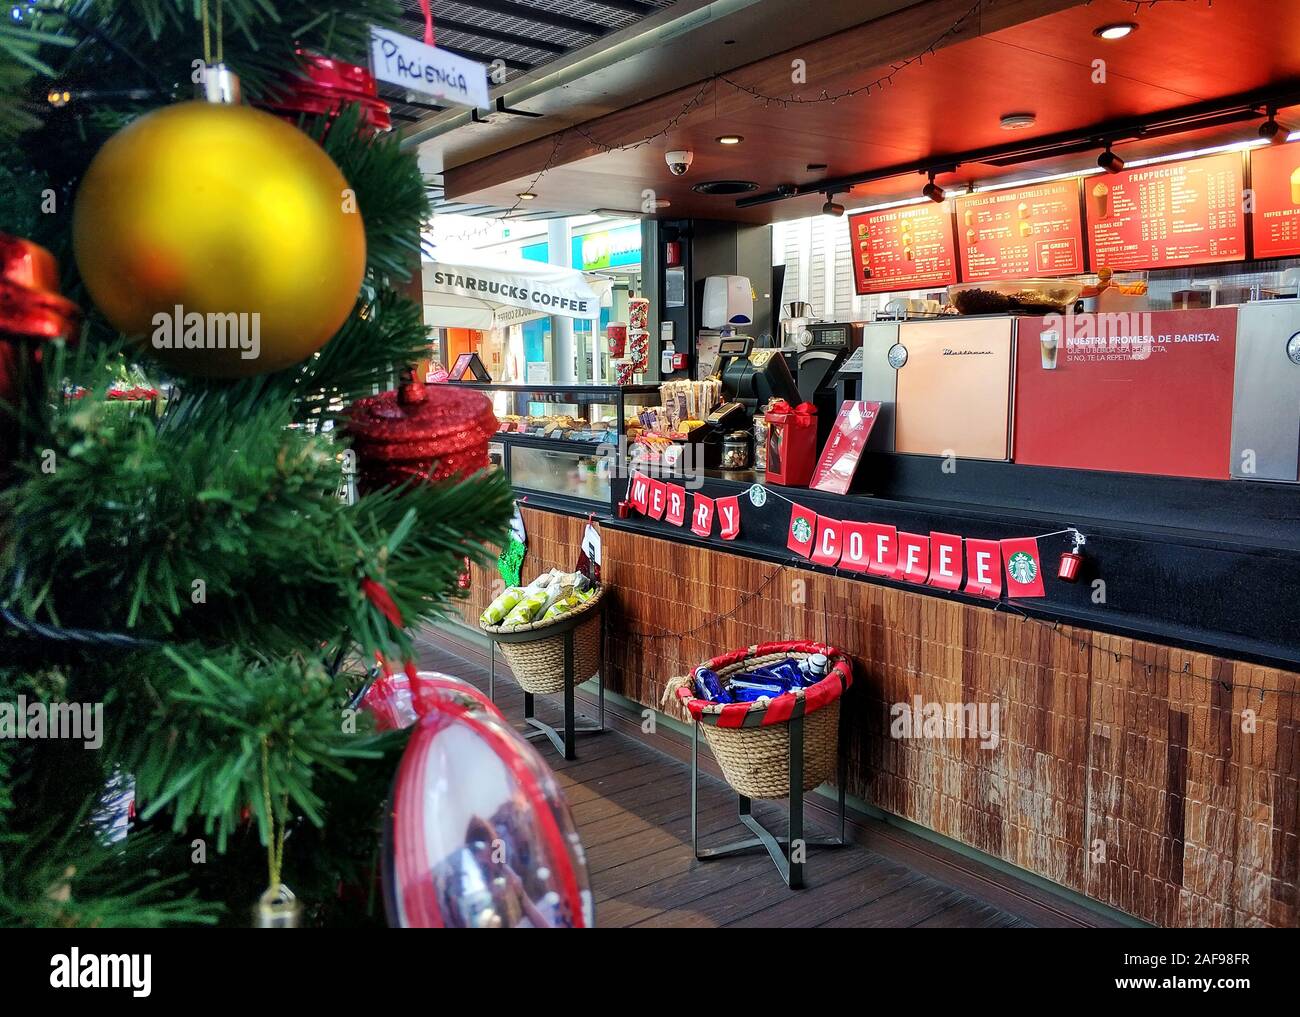 Torrevieja, Spanien - November 27, 2019: Weihnachten Dekoration Showcase bei Starbucks Coffee Shop, verziert Christbaum als Symbol des neuen Jahres Stockfoto